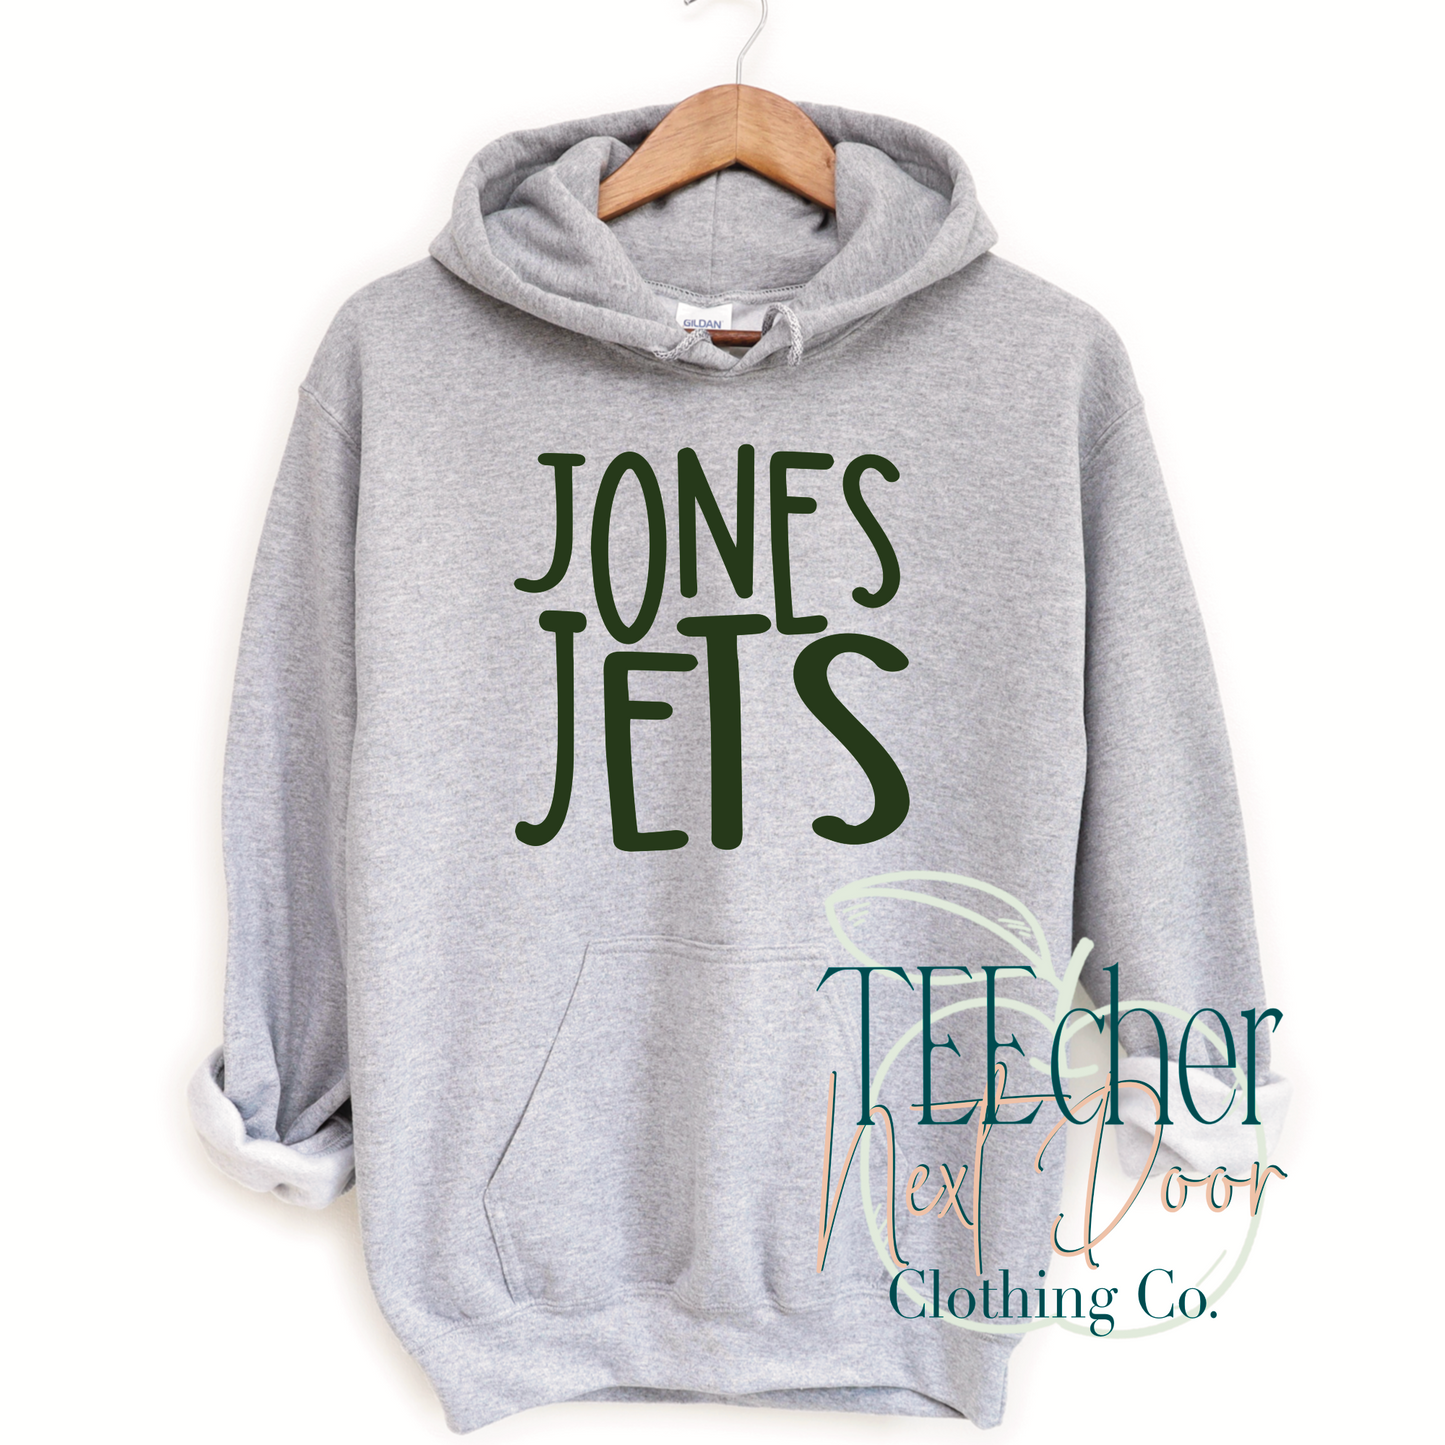 Jones Jets Handwritten